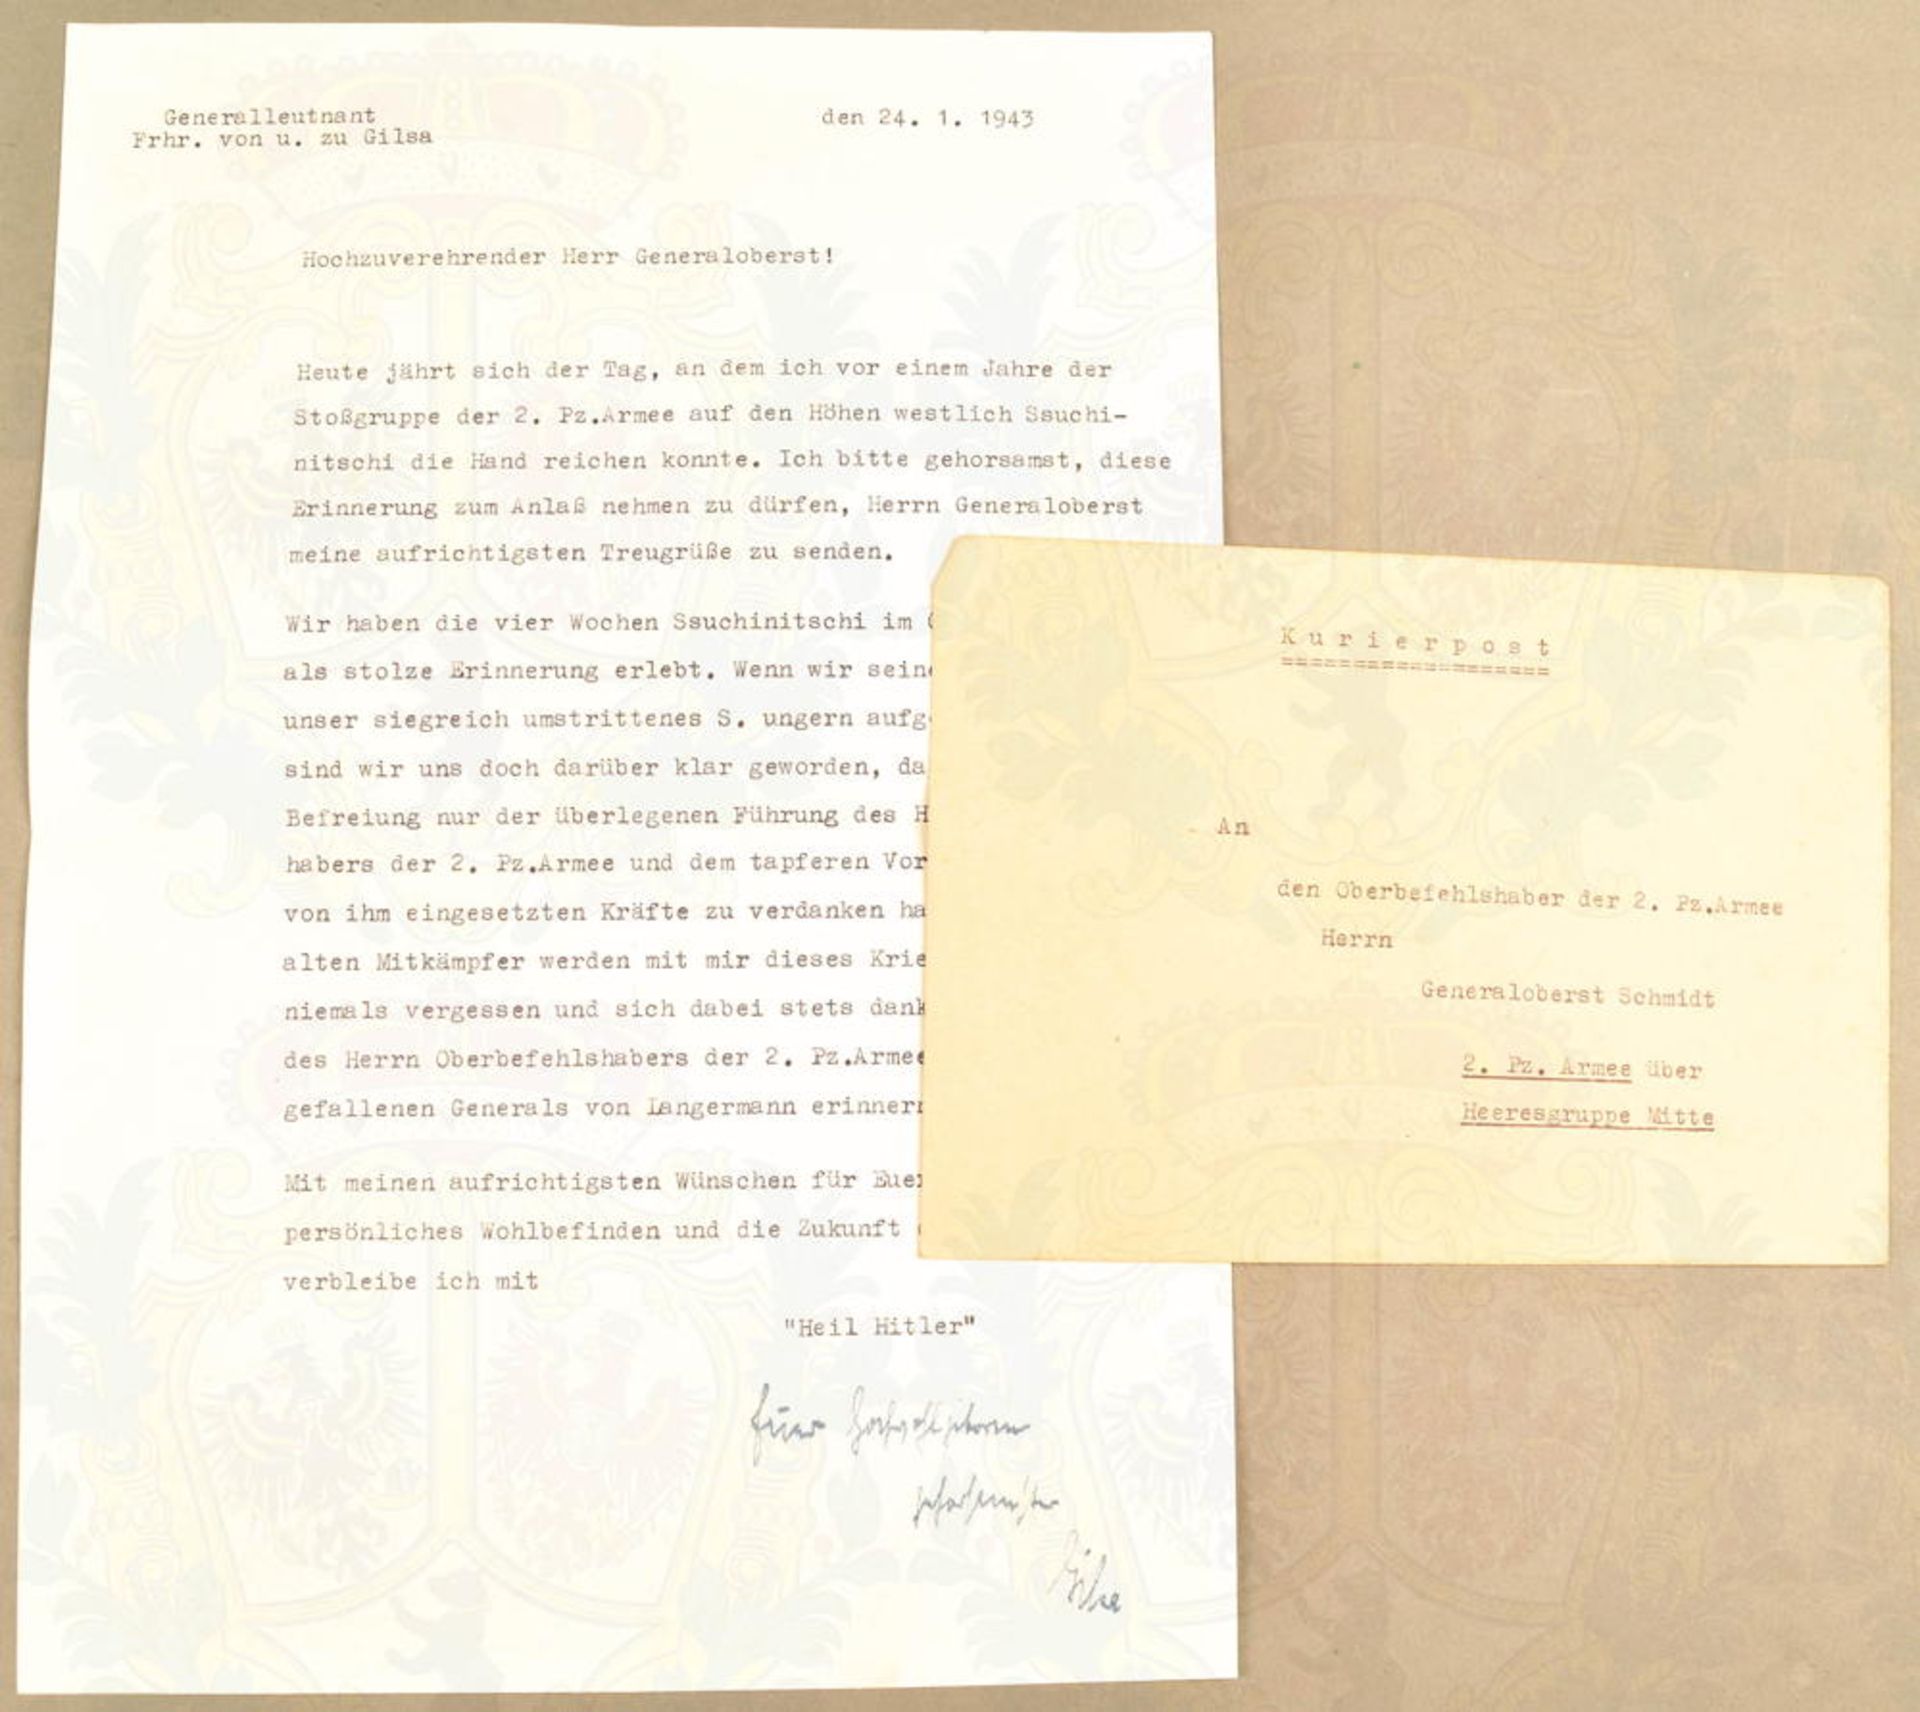 Army letter Lieutenant General Werner von und zu Gilsa 1943